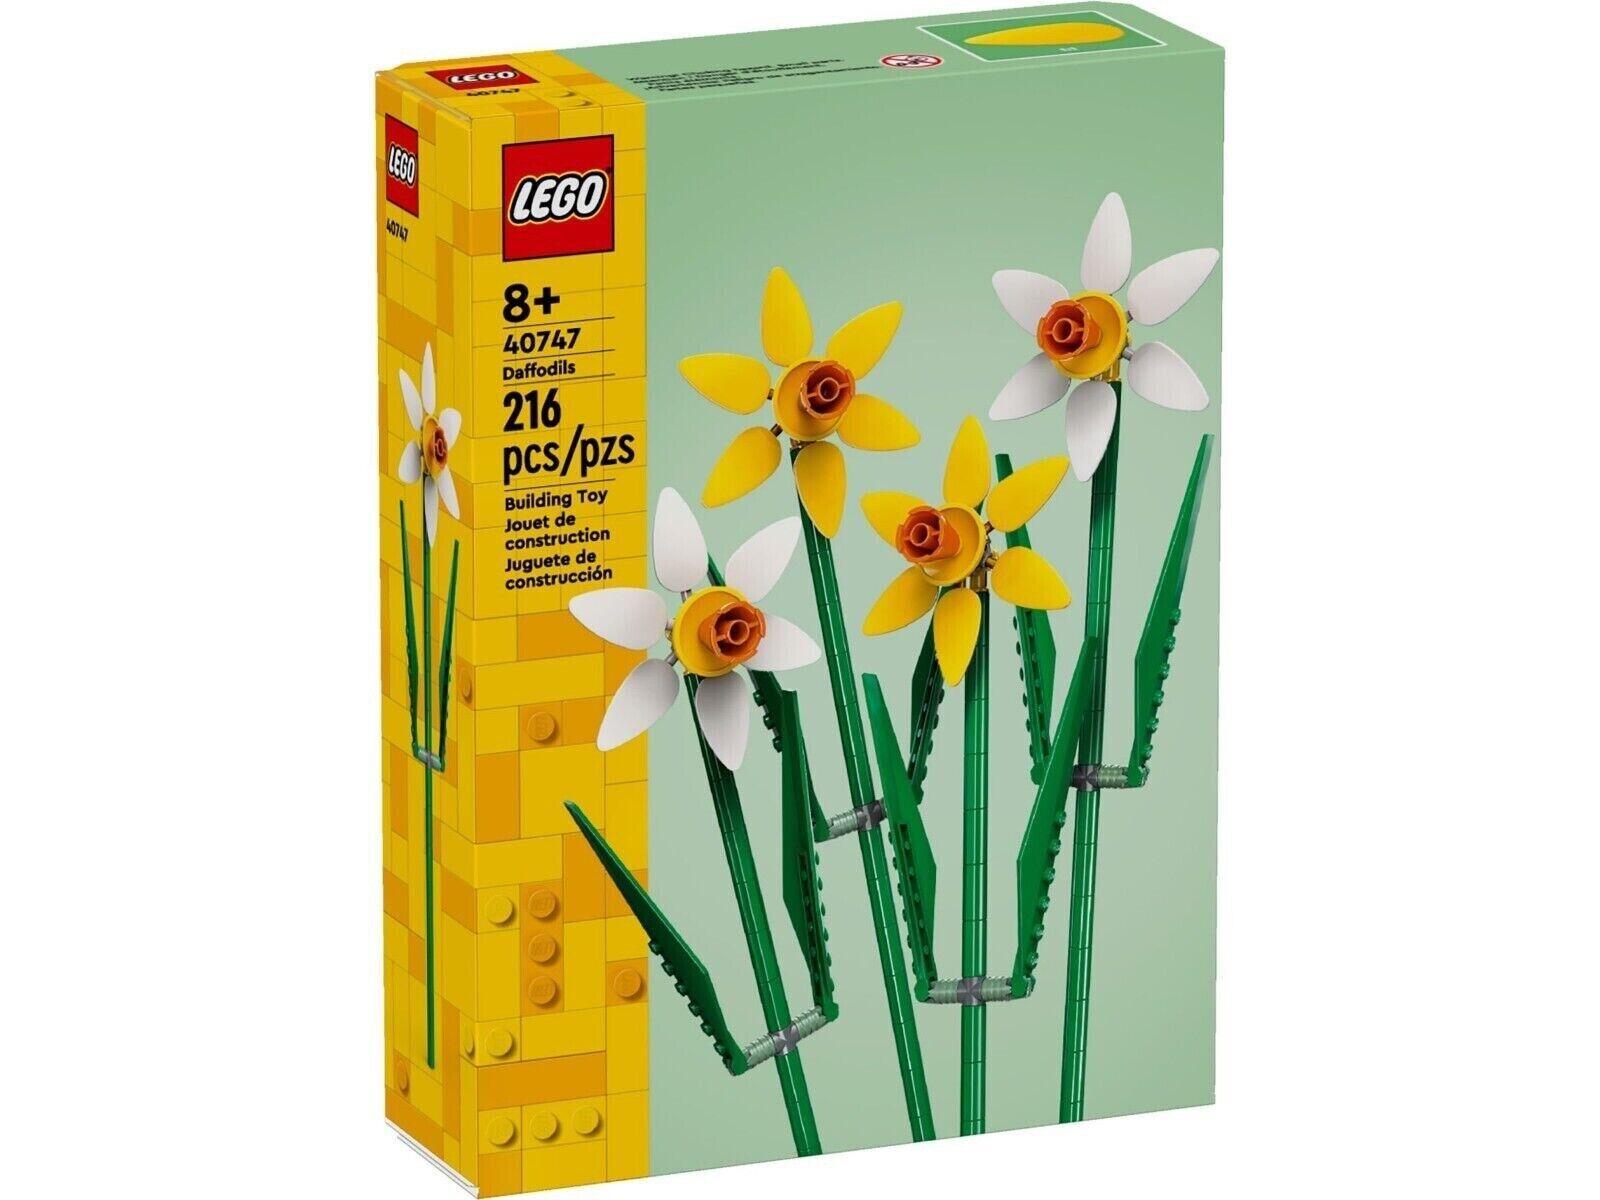 LEGO® Daffodils (40747)